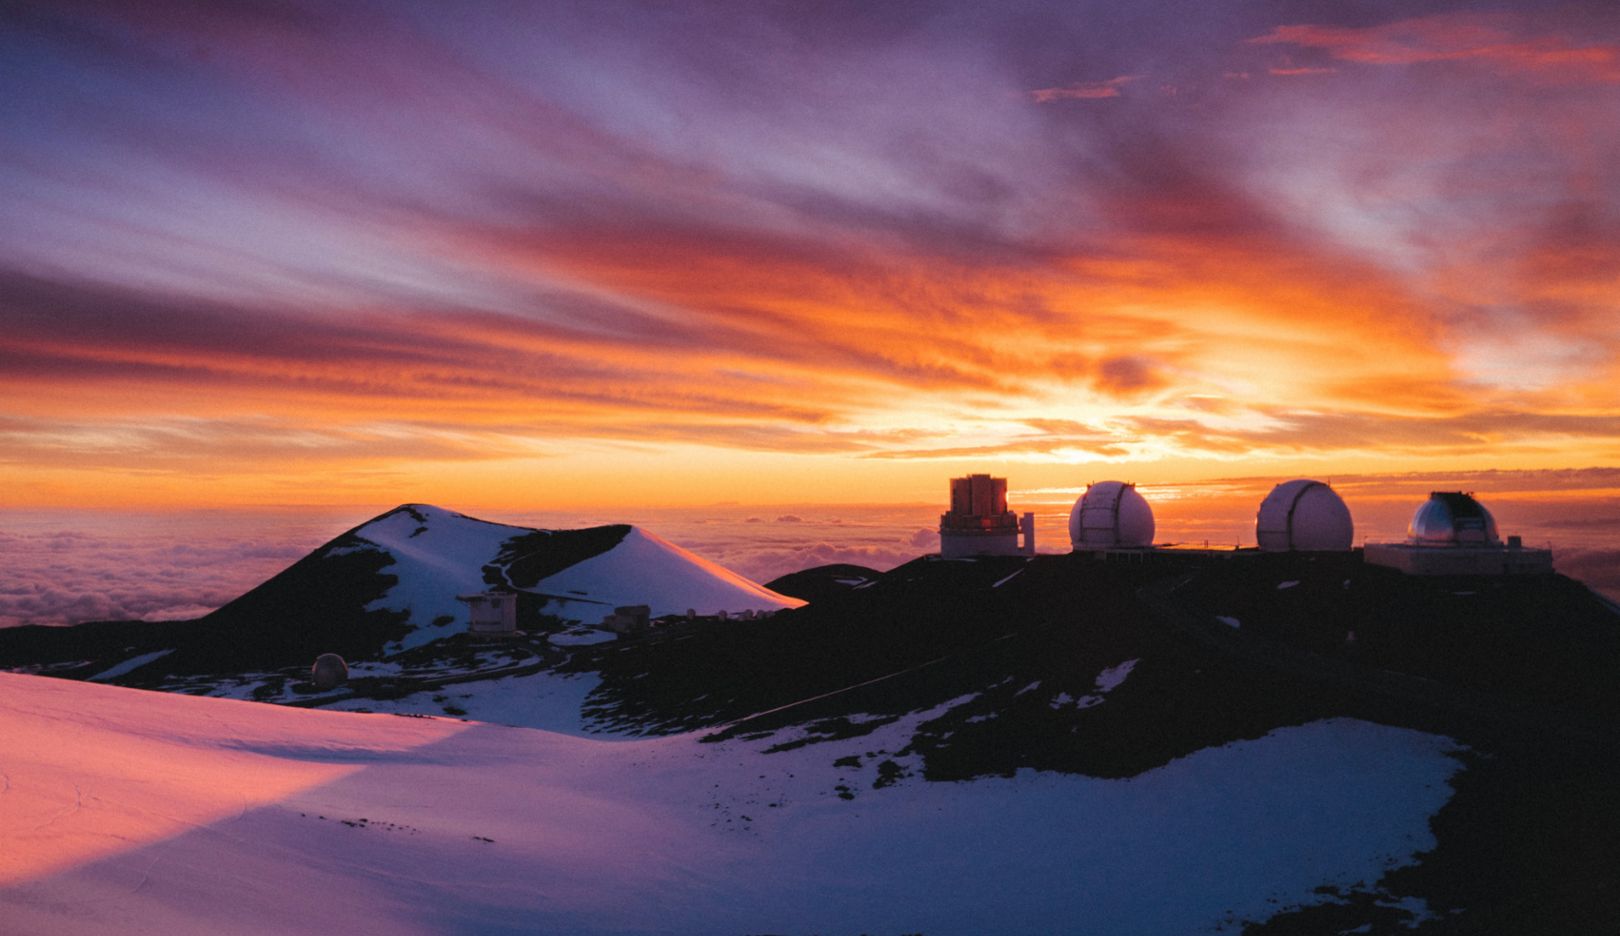 Sonnenaufgang auf dem Gipfel des 4.200 Meter hohen Vulkans. Das Mauna Kea Observatorium ist eine der bedeutendsten astronomischen Einrichtungen der Gegenwart.